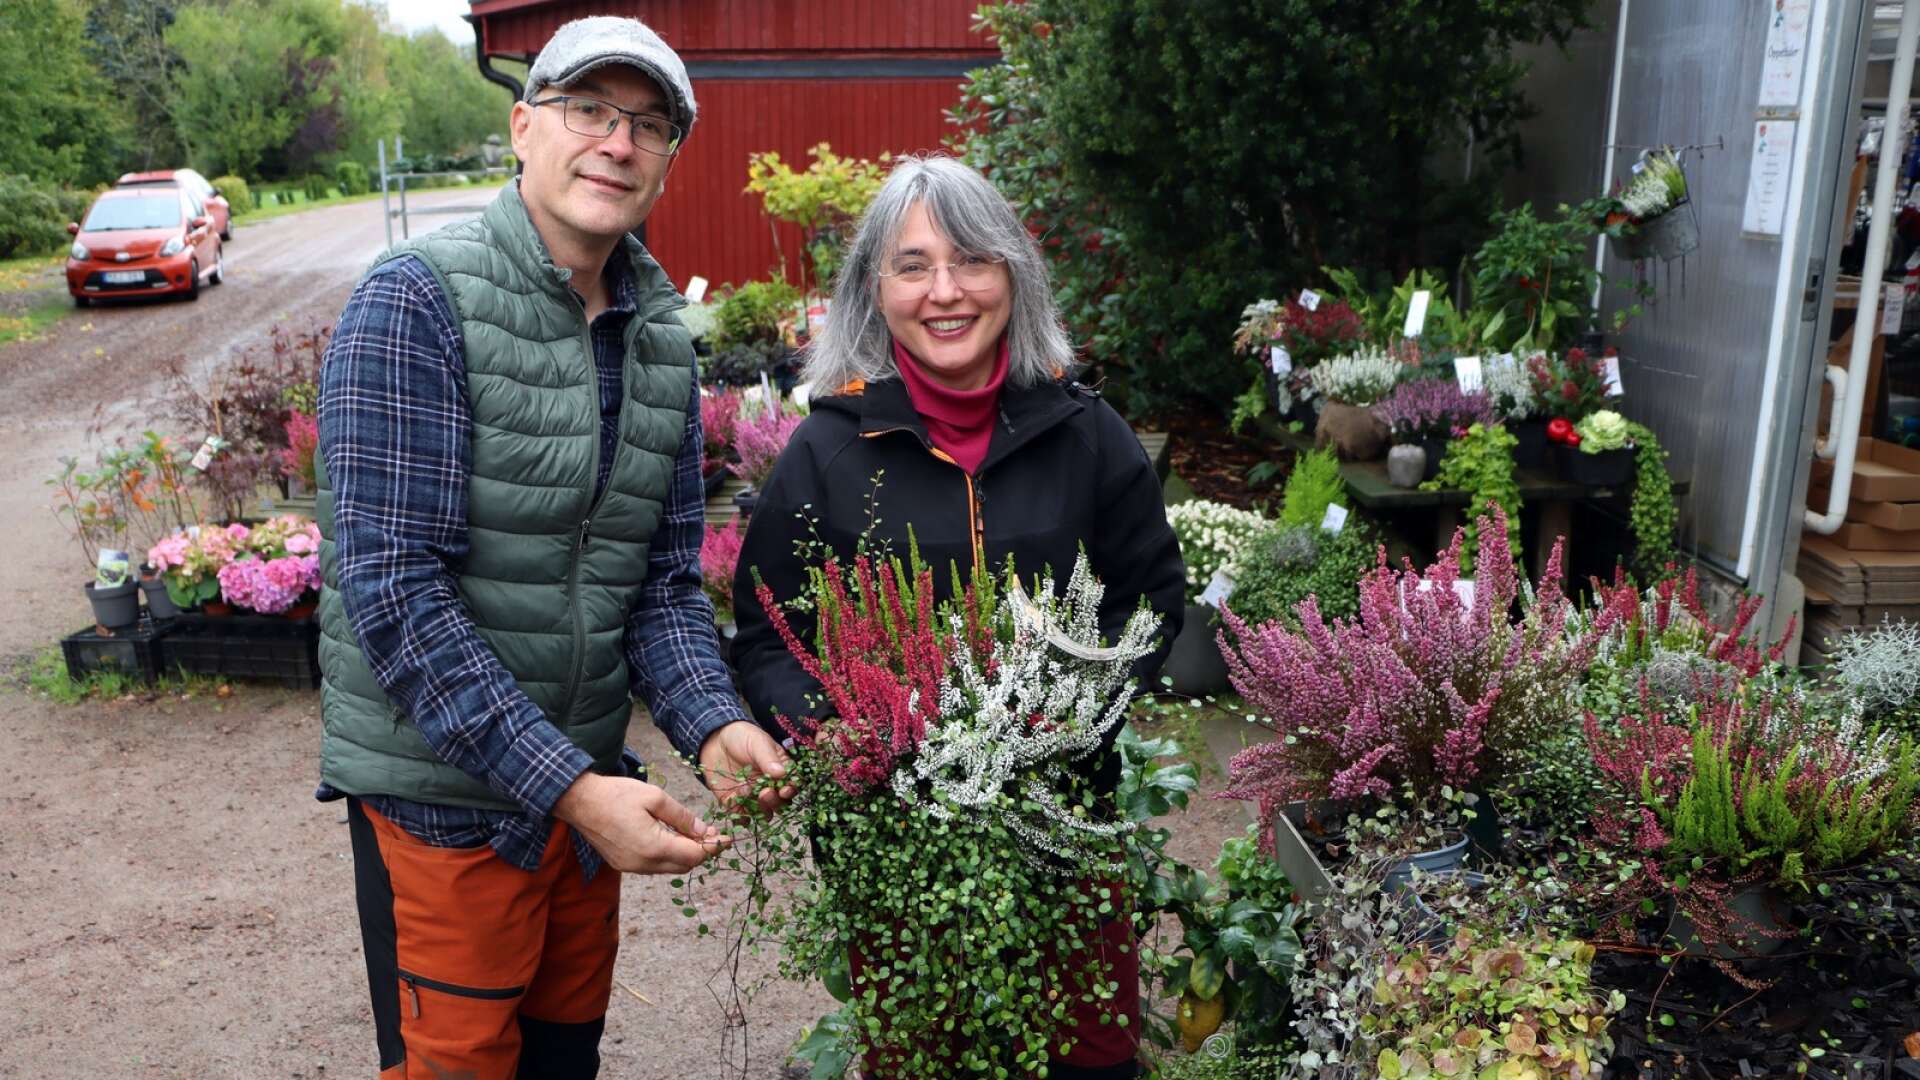 Det finns många fina höstväxter att plantera nu. Zoltan och Cleo Dioszegi på Rosenlunds trädgård ger tips om bra kombinationer som ljung i olika färger och muehlenbeckia, små blad på långa rankor.